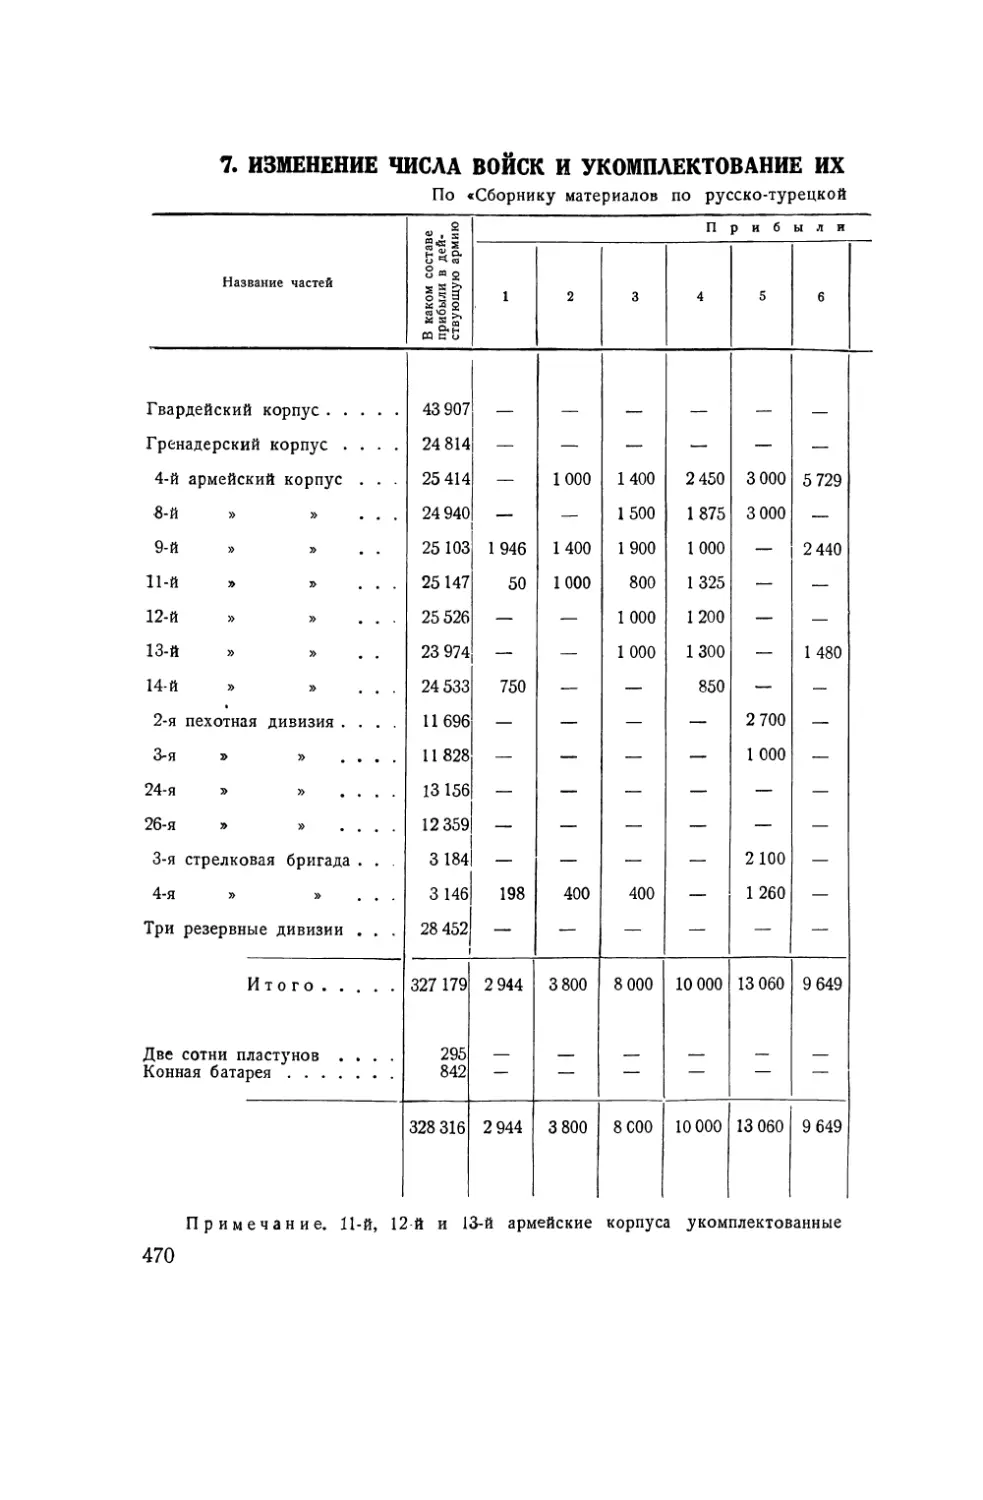 7. Изменение числа войск и укомплектование их за период с 1 июня 1877 г. по 1 августа 1878 г.